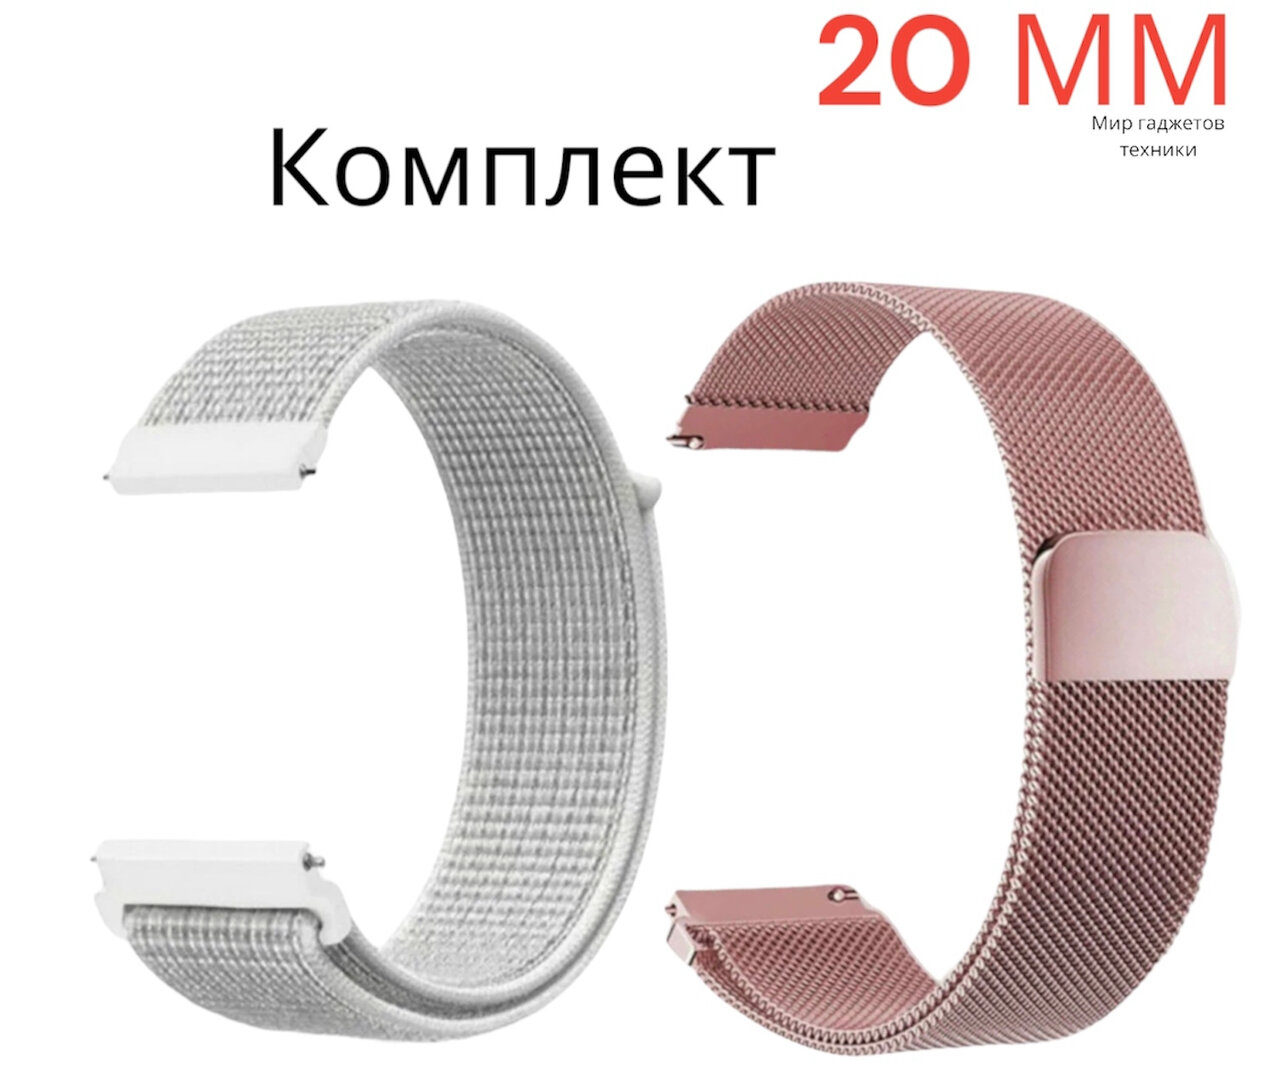 Ремешок миланская петля, шириной 20 мм/ Универсальный нейлоновый ремешок для смарт-часов Xiaomi, Amazfit, Huawei, Samsung Galaxy Watch, Garmin 20 мм